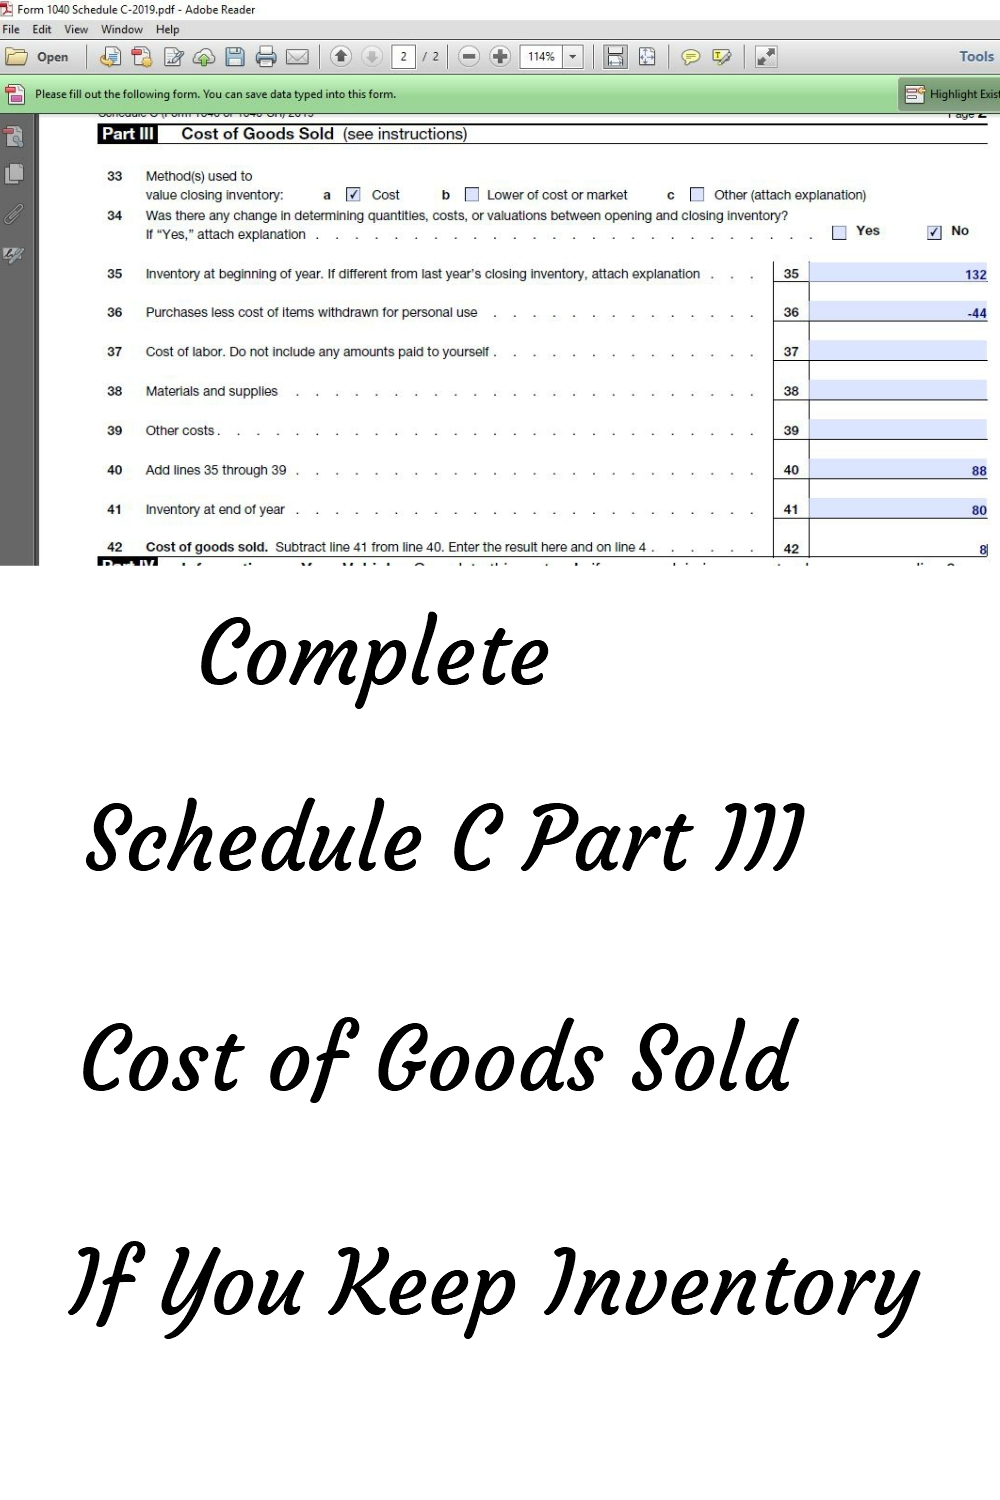 Schedule C Form 1040 Part III-Cost of Goods Sold